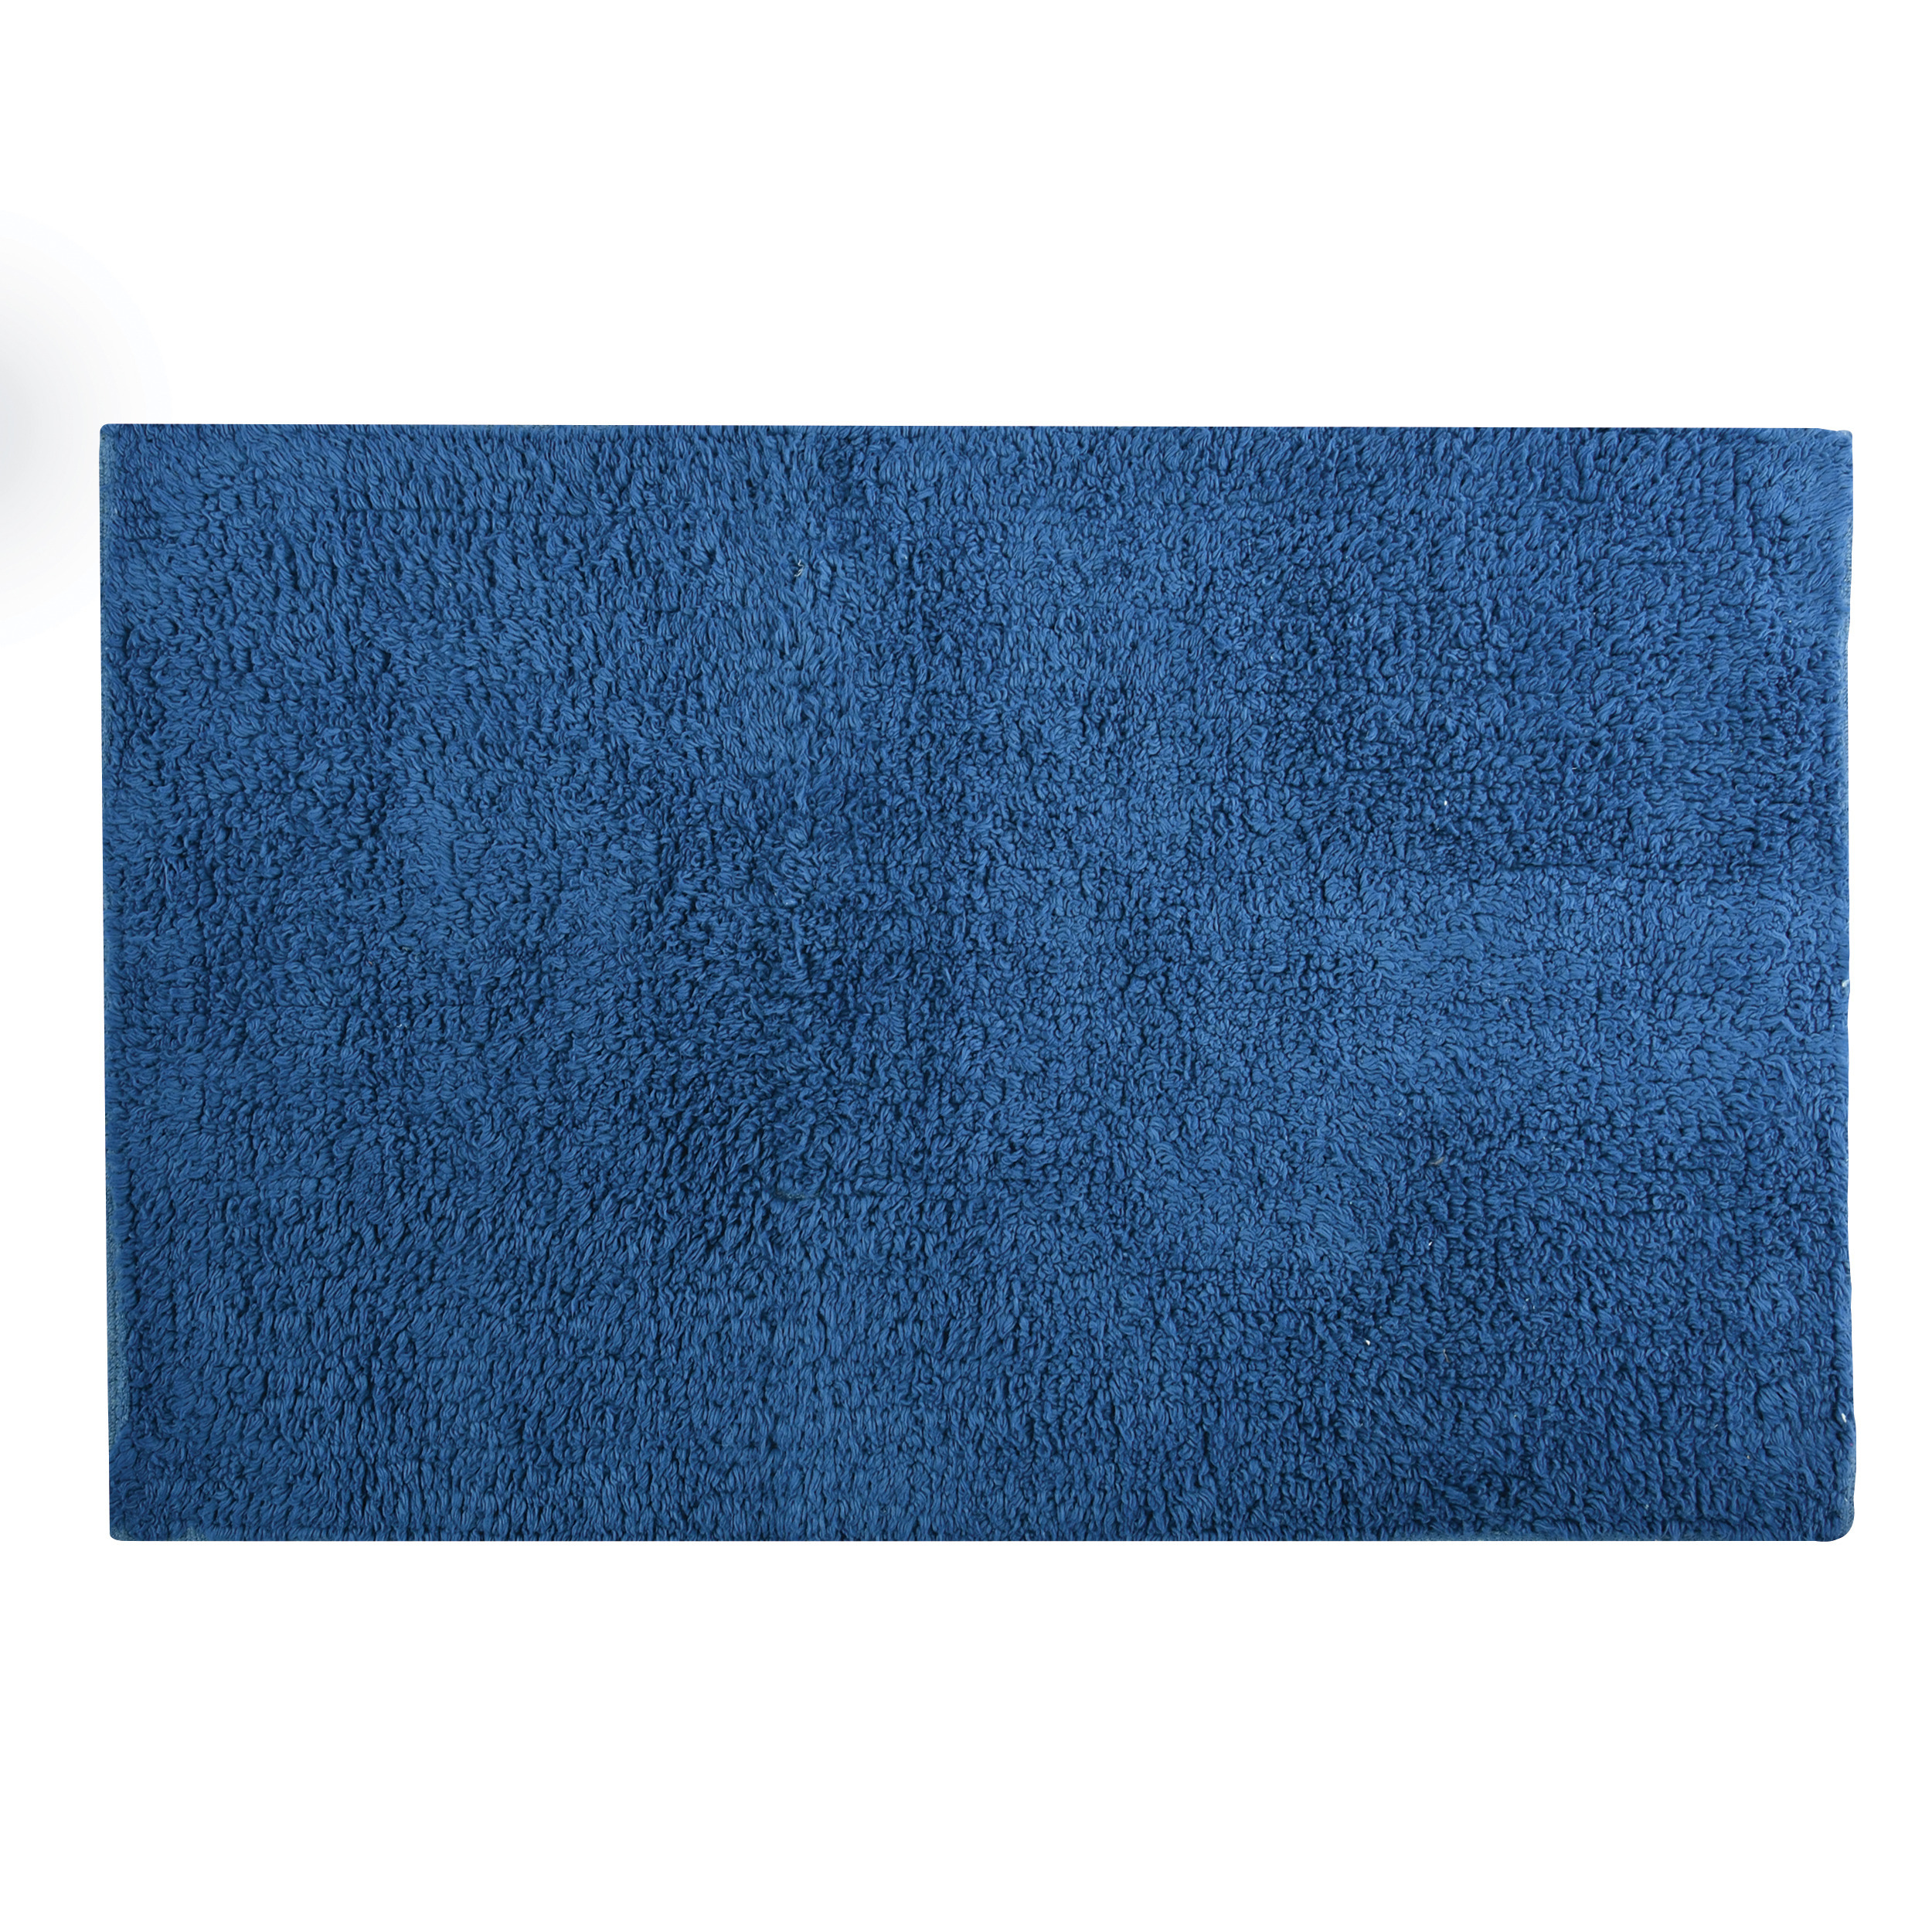 Badkamerkleedje-badmat tapijtje voor op de vloer donkerblauw 40 x 60 cm